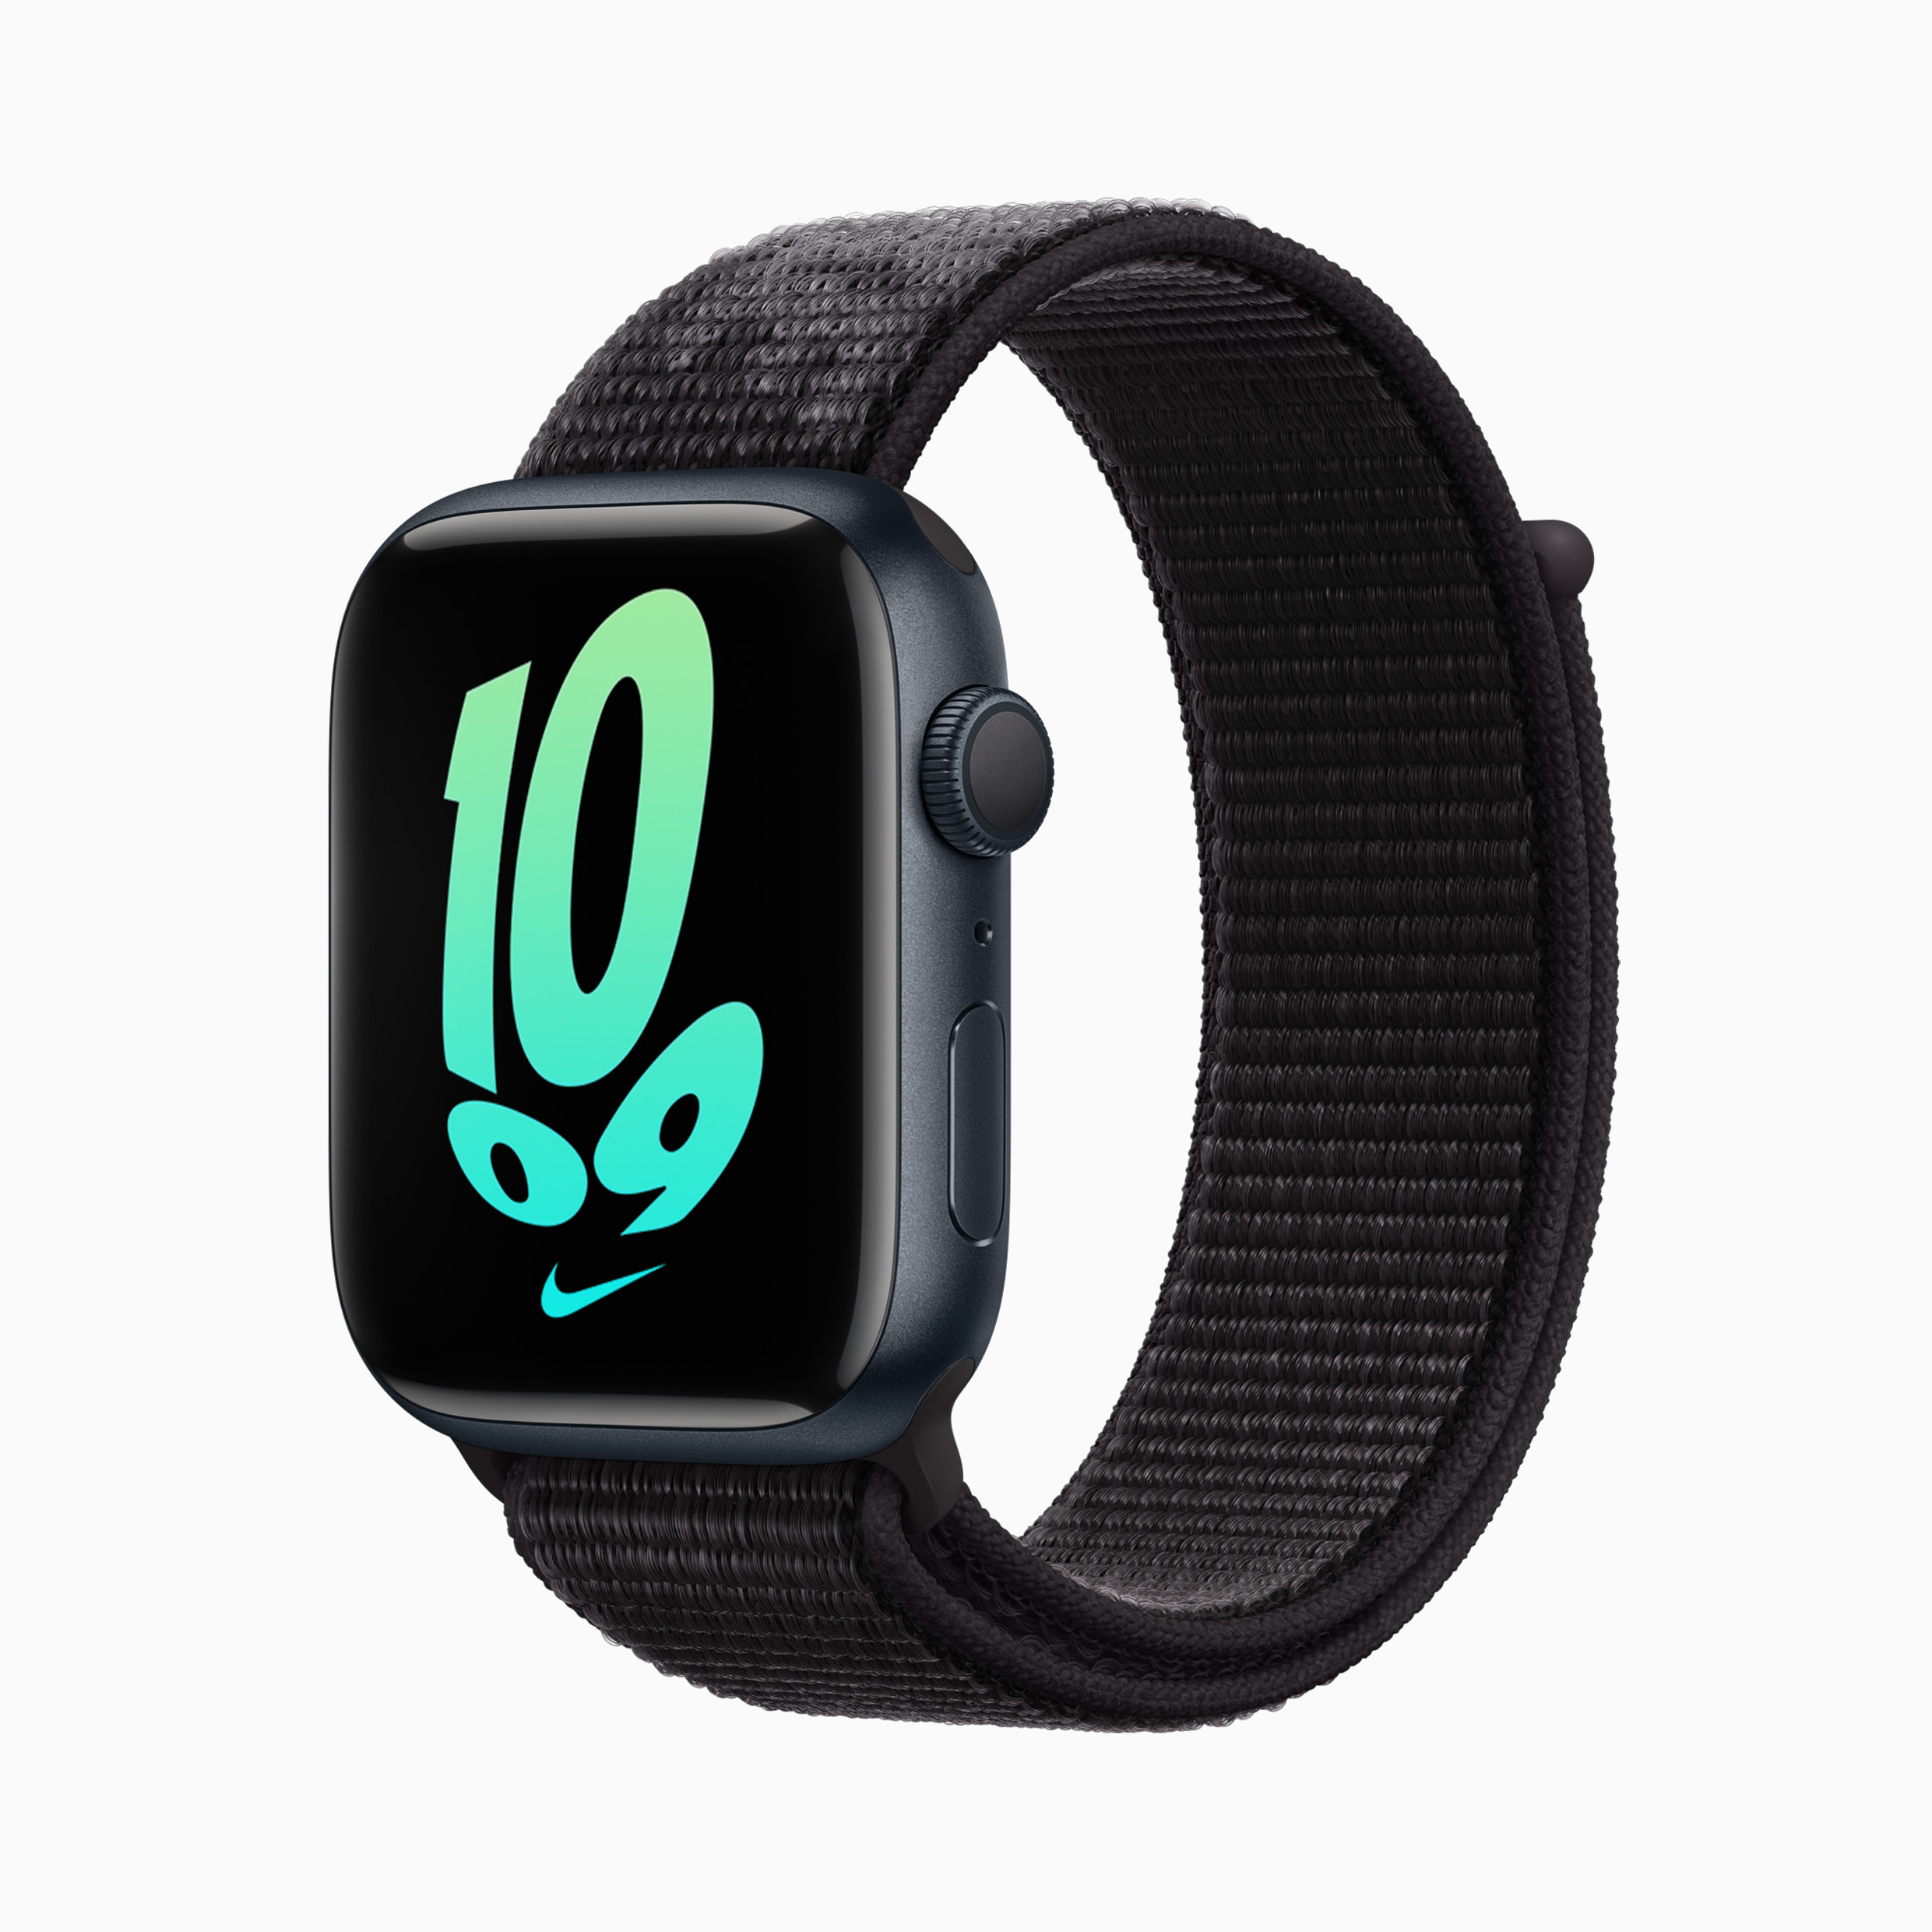 liter toewijzen Menselijk ras Apple Watch Series 7 orders start Friday, October 8 - Apple